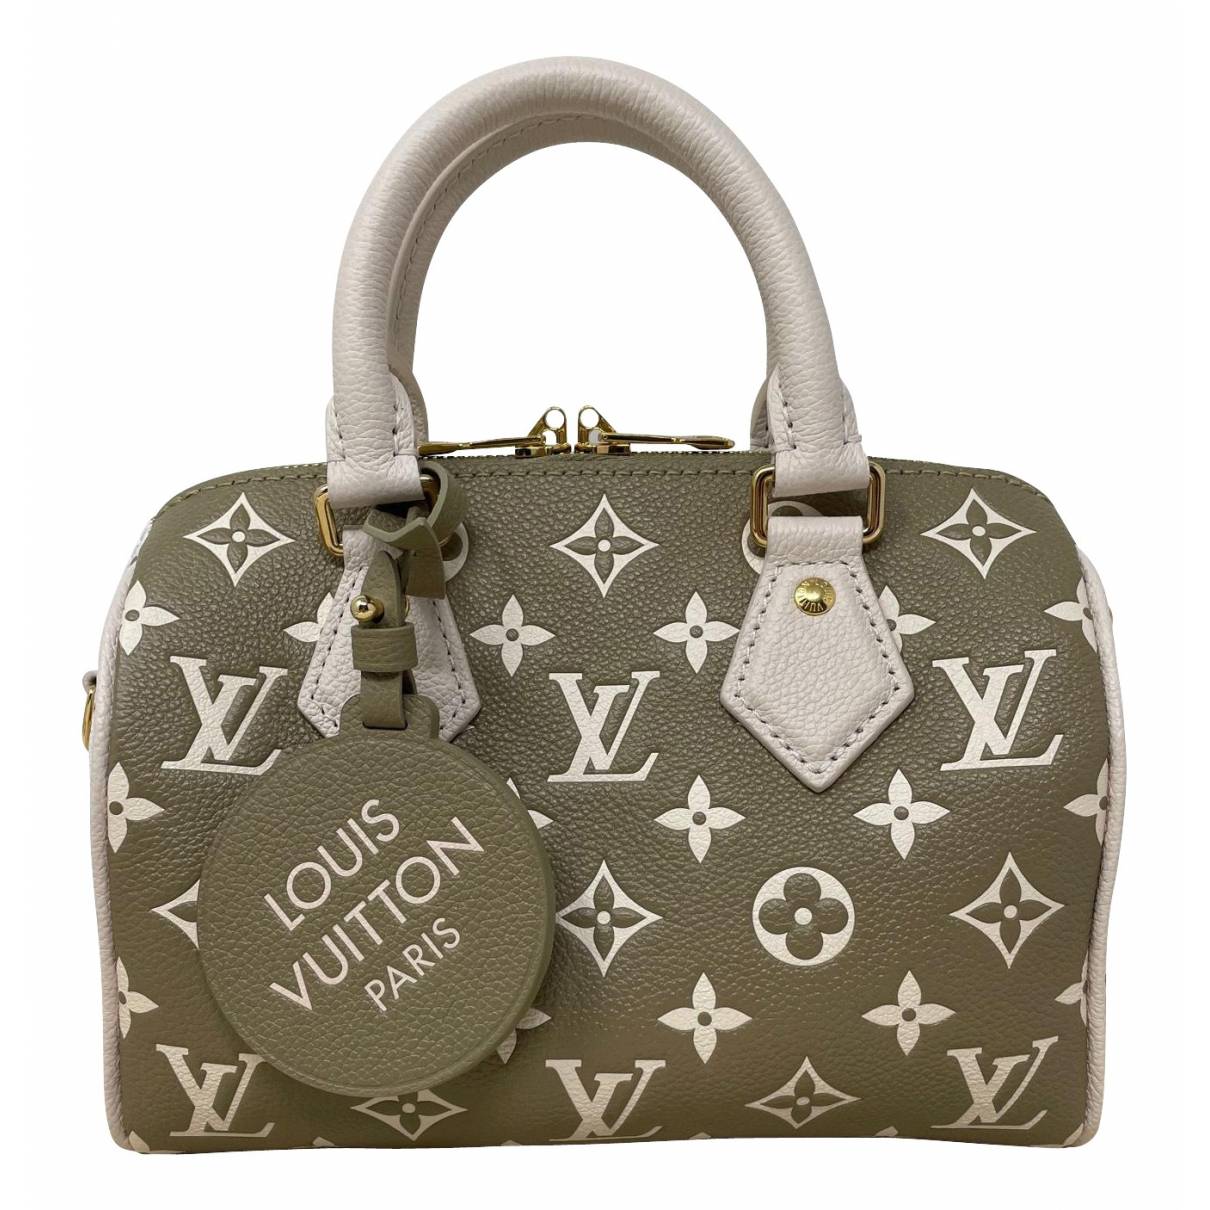 Nano speedy / mini hl leather handbag Louis Vuitton Khaki in Leather -  25251104